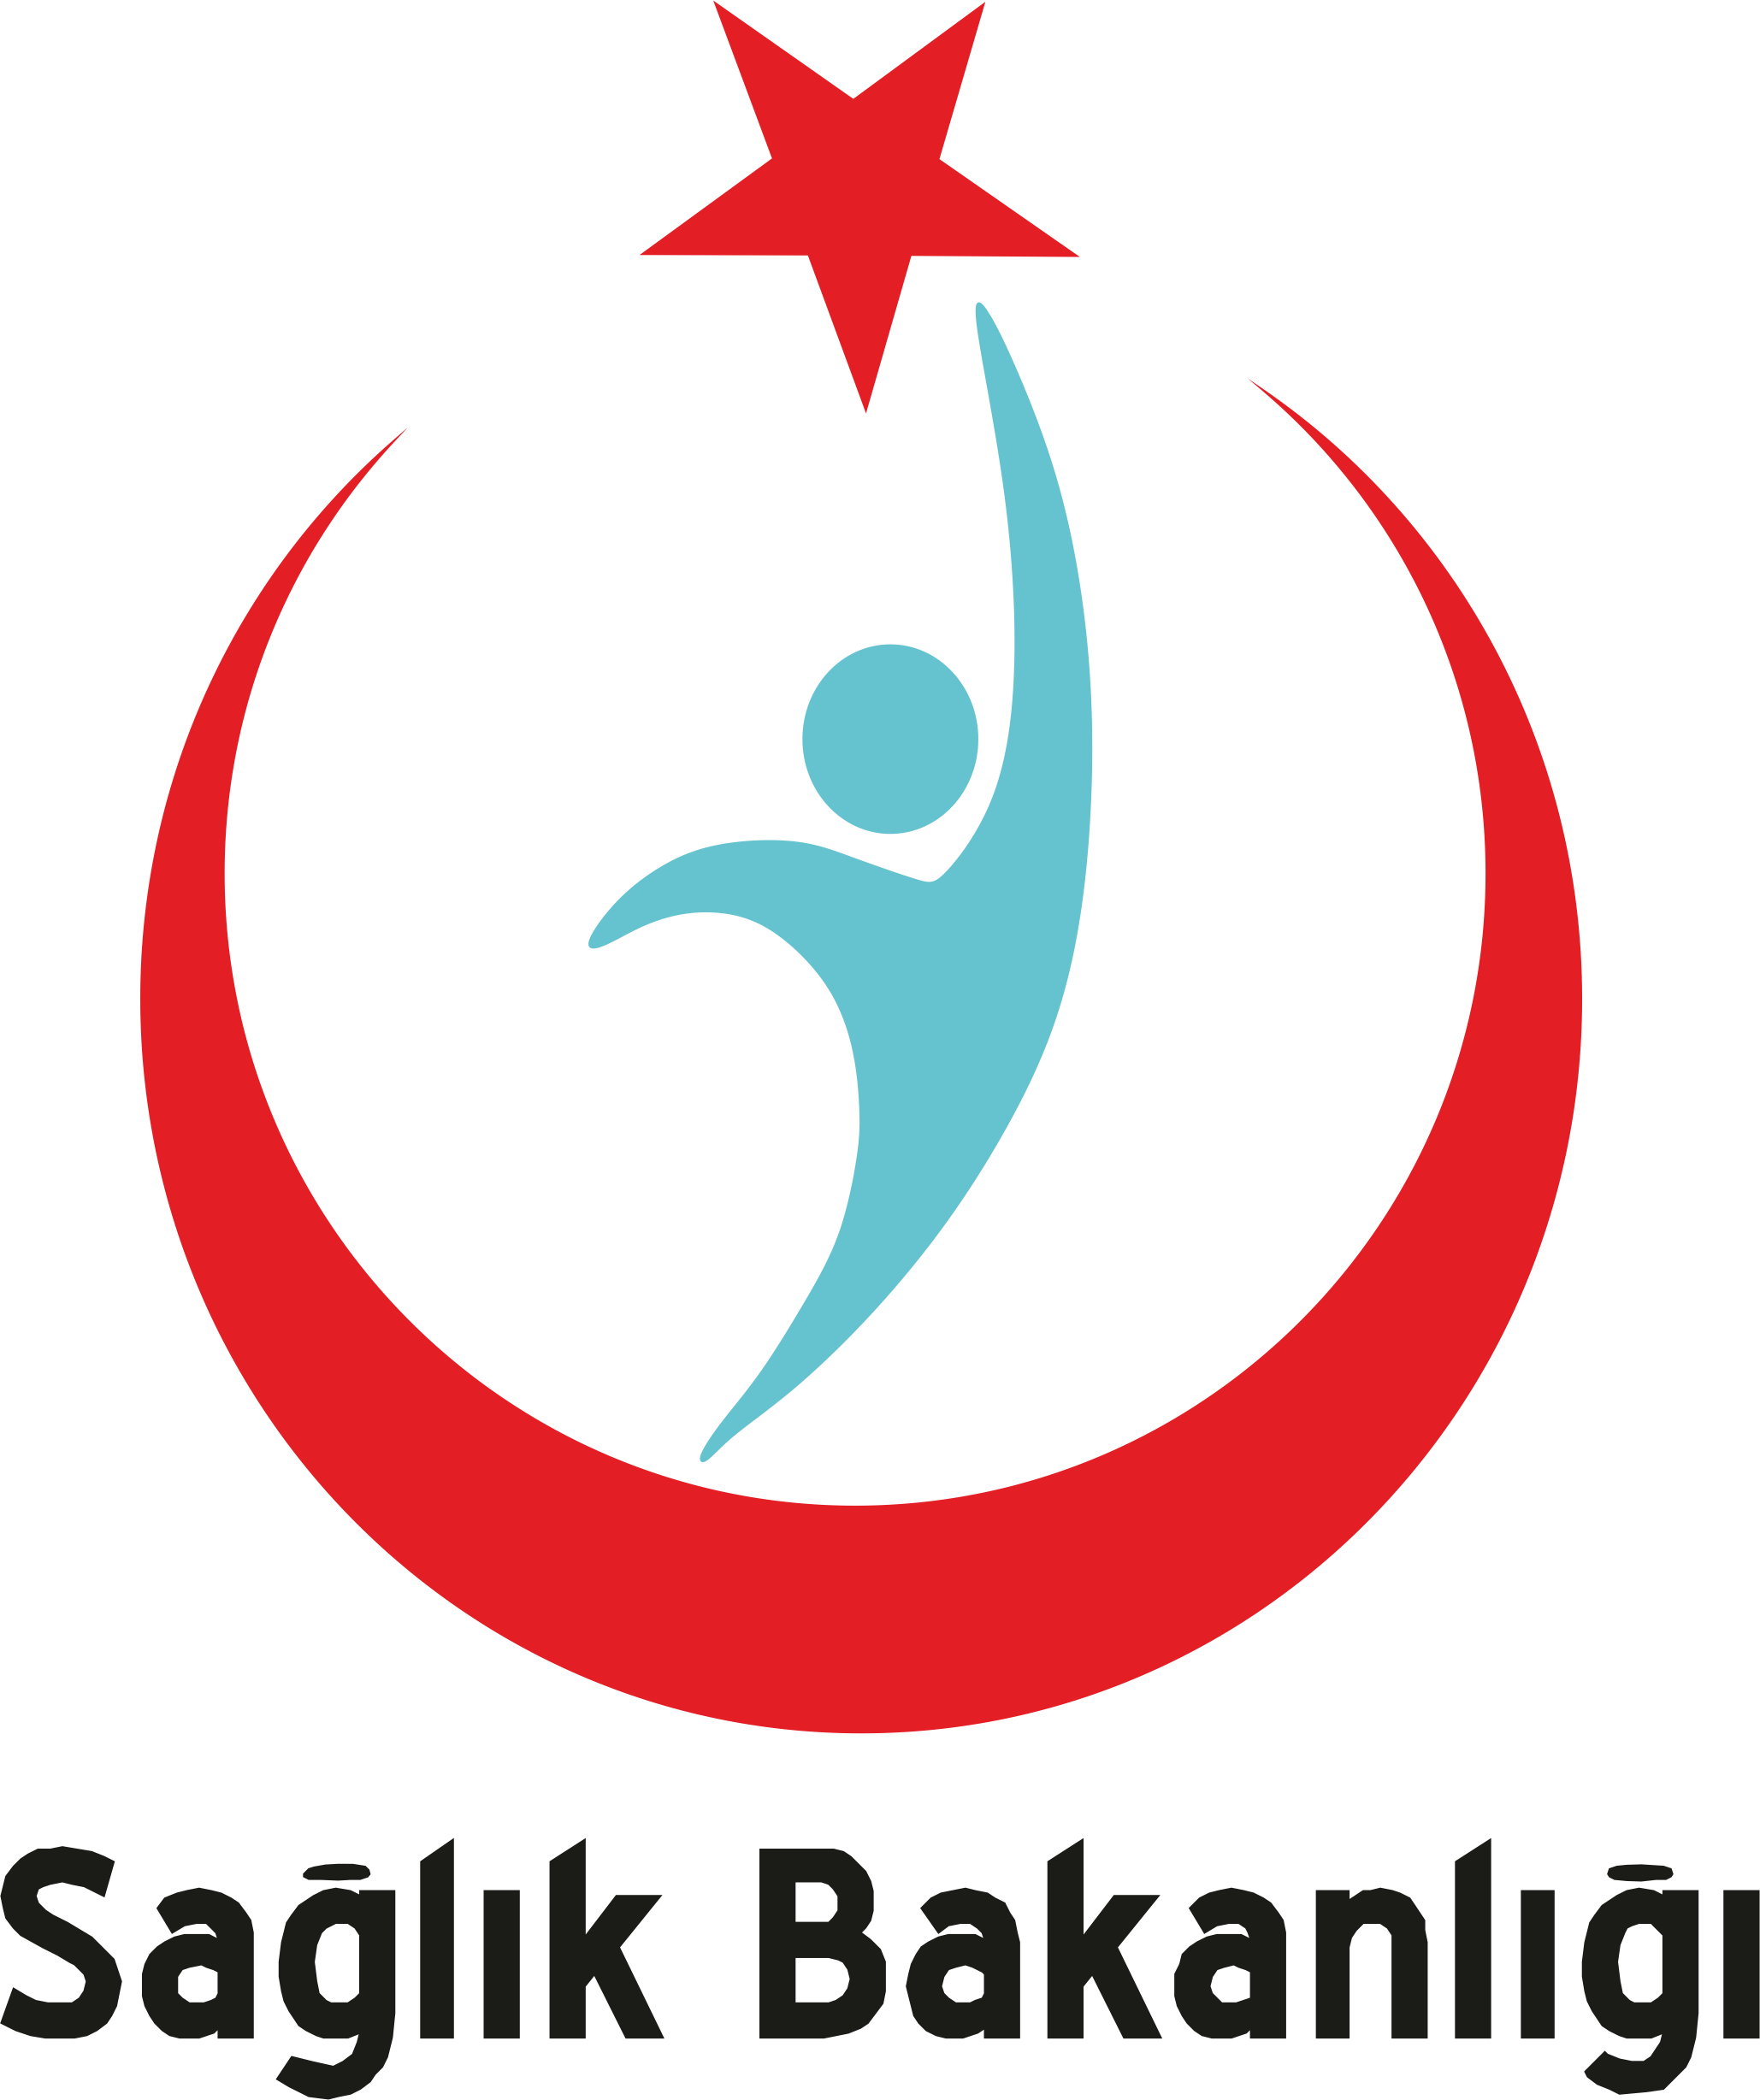 Sağlık Bakanlığı Logo photo - 1